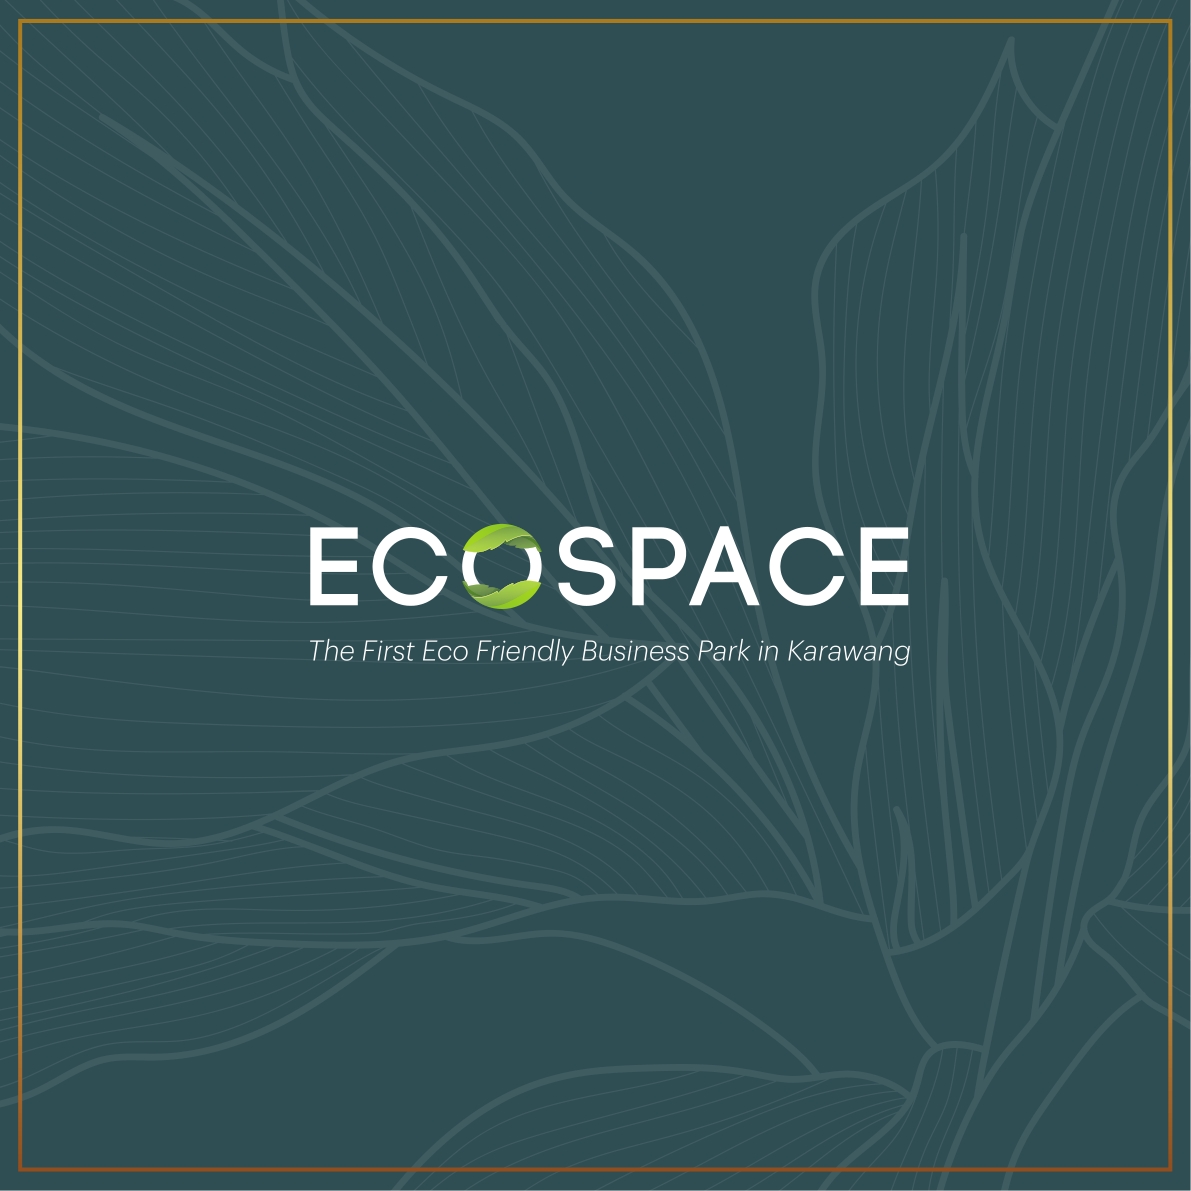 ecospace